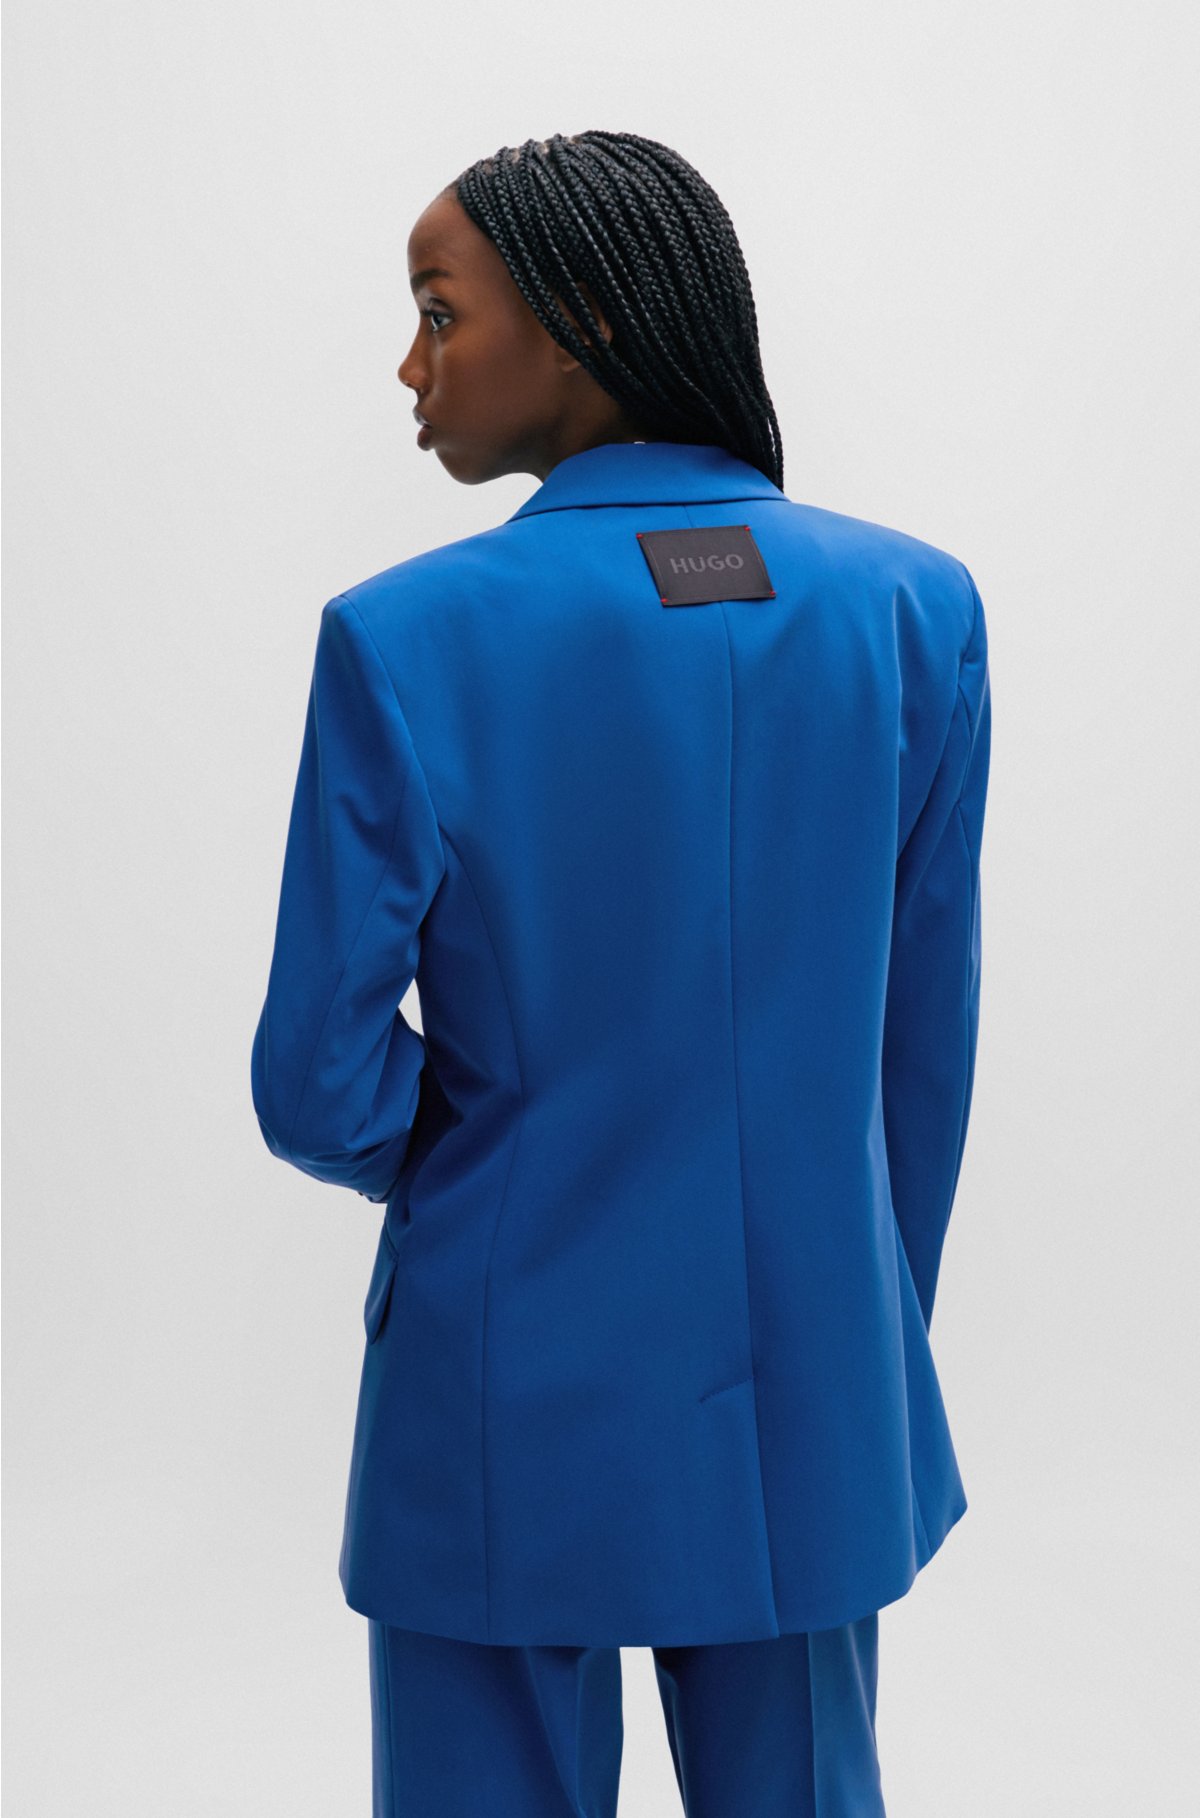 Elegant Blue Blazers for Women by HUGO BOSS